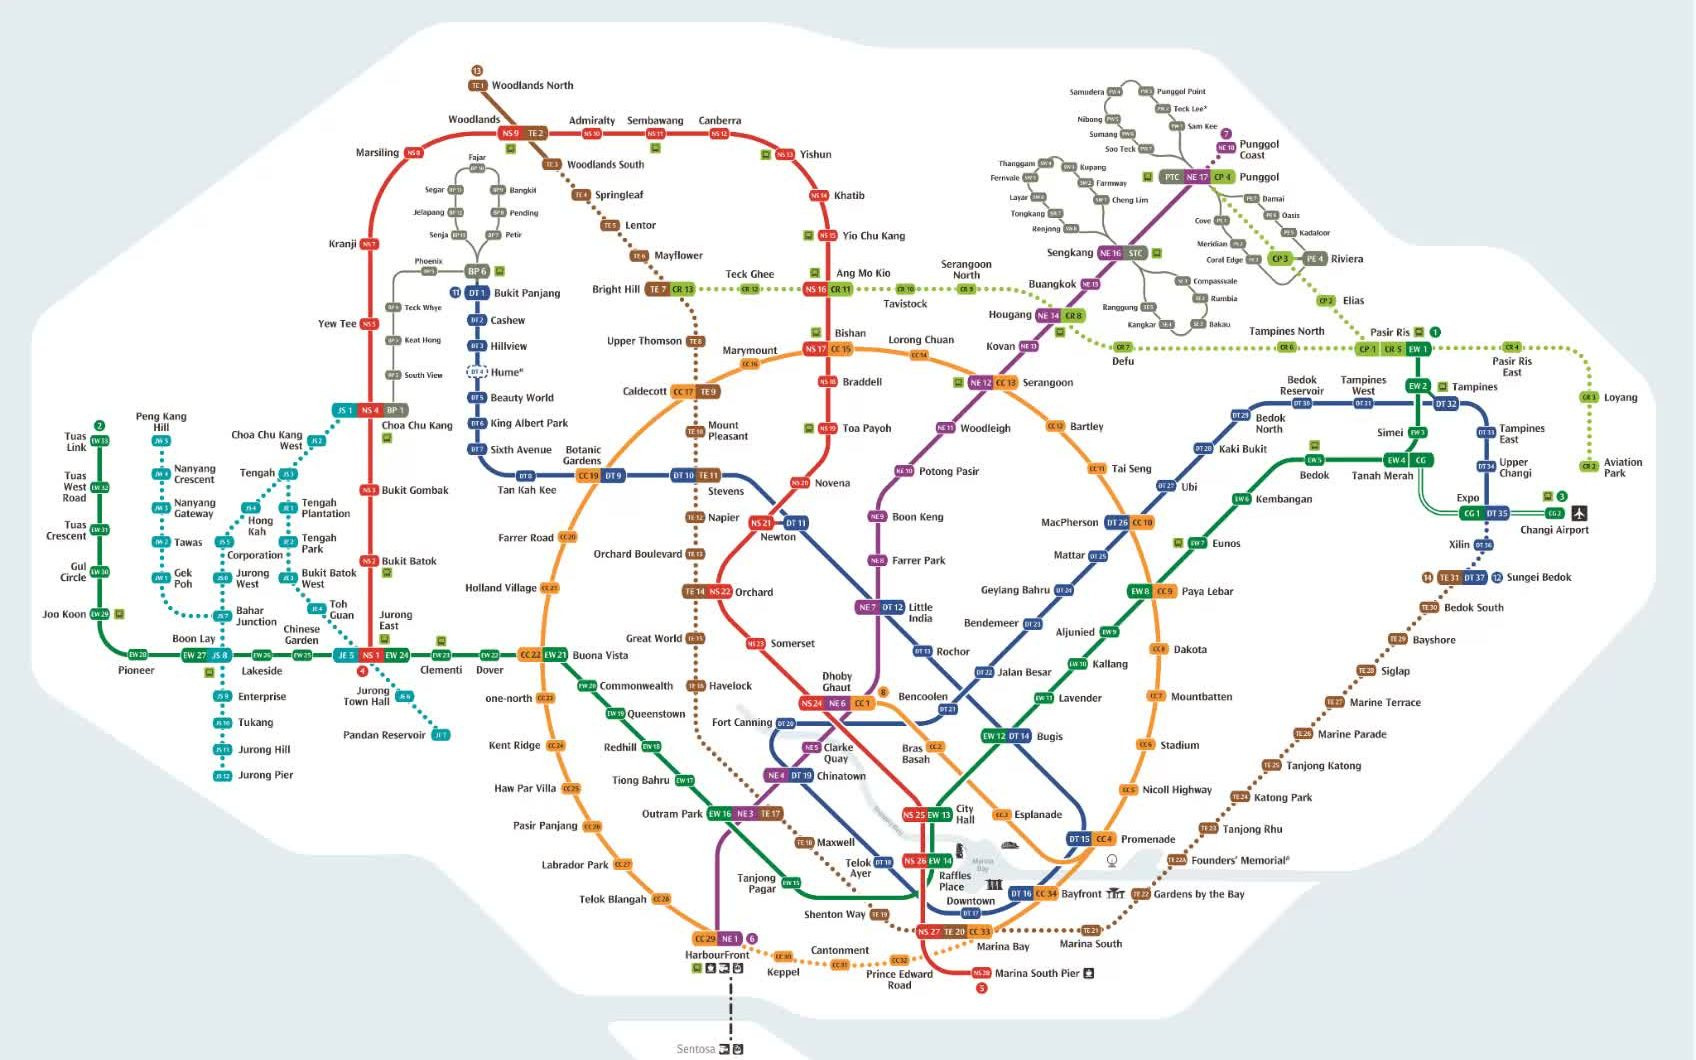 新加坡地铁图2021图片